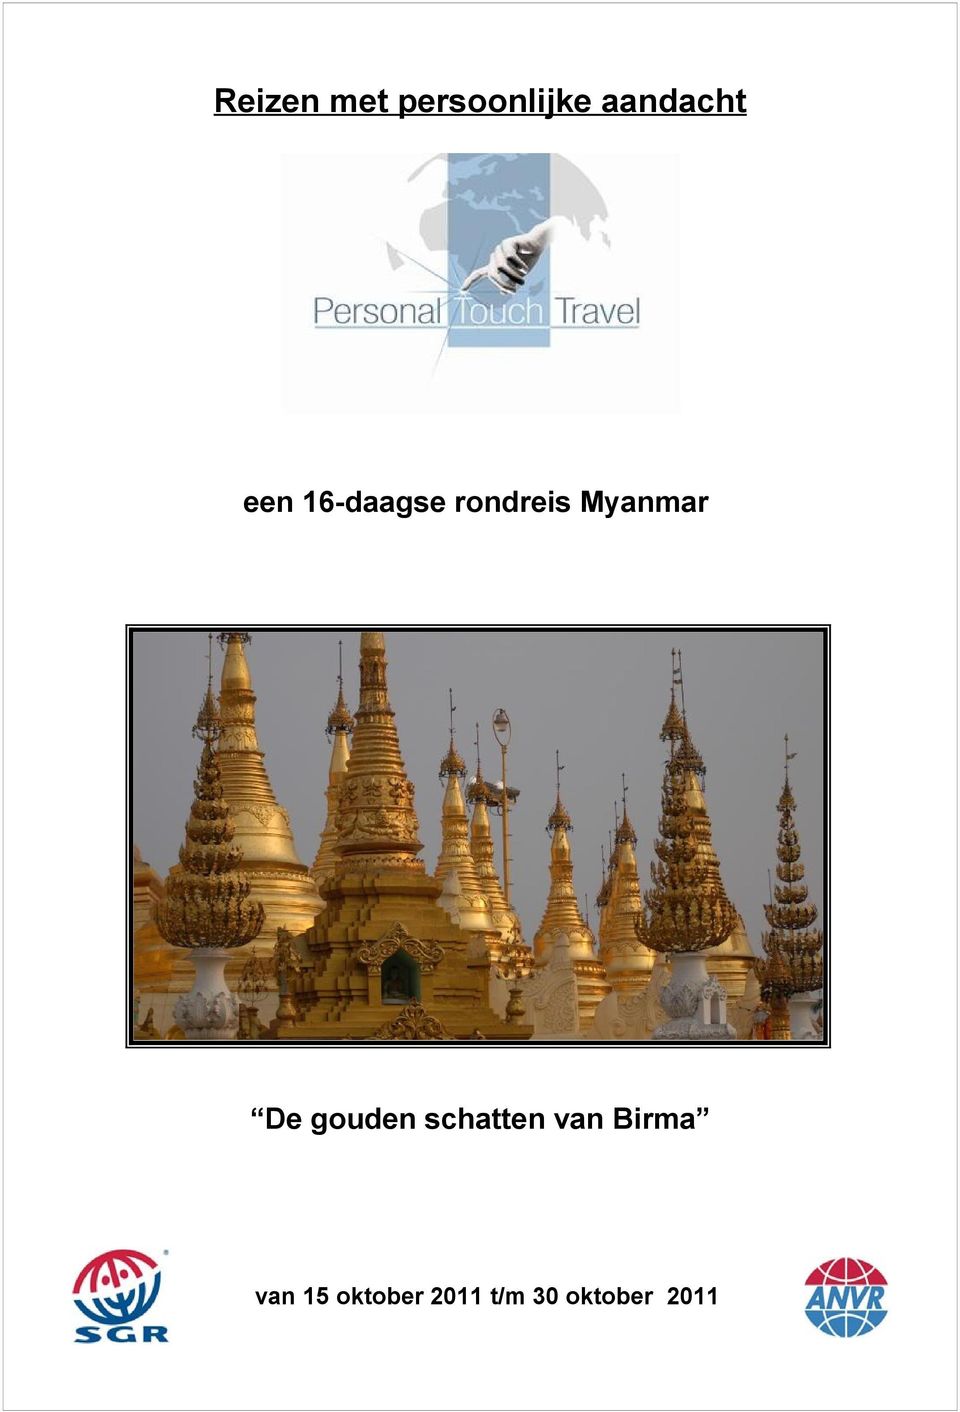 De gouden schatten van Birma van